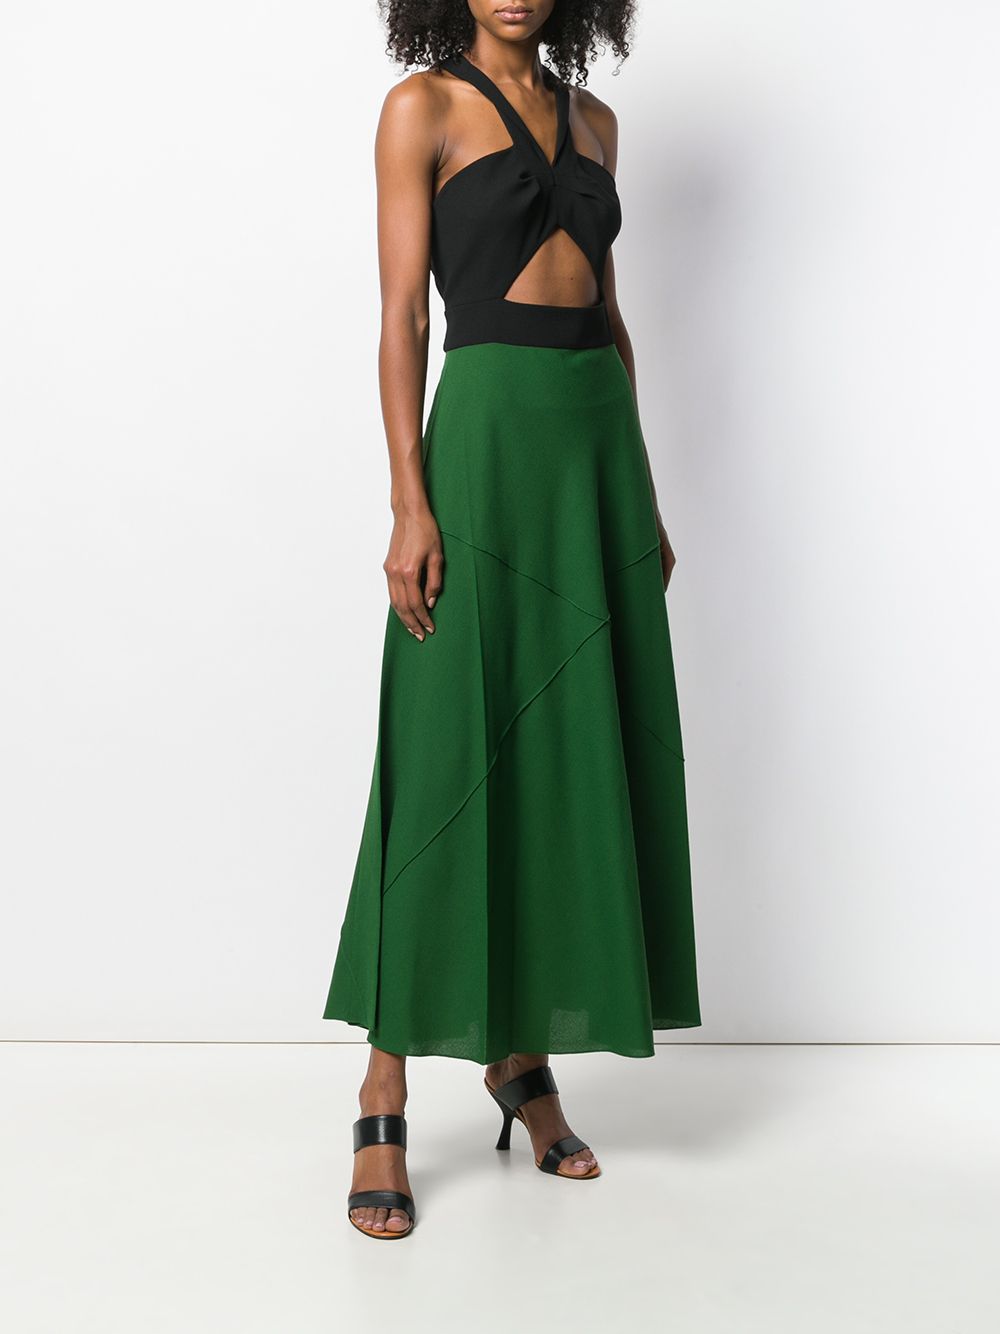 фото Givenchy двухцветное платье